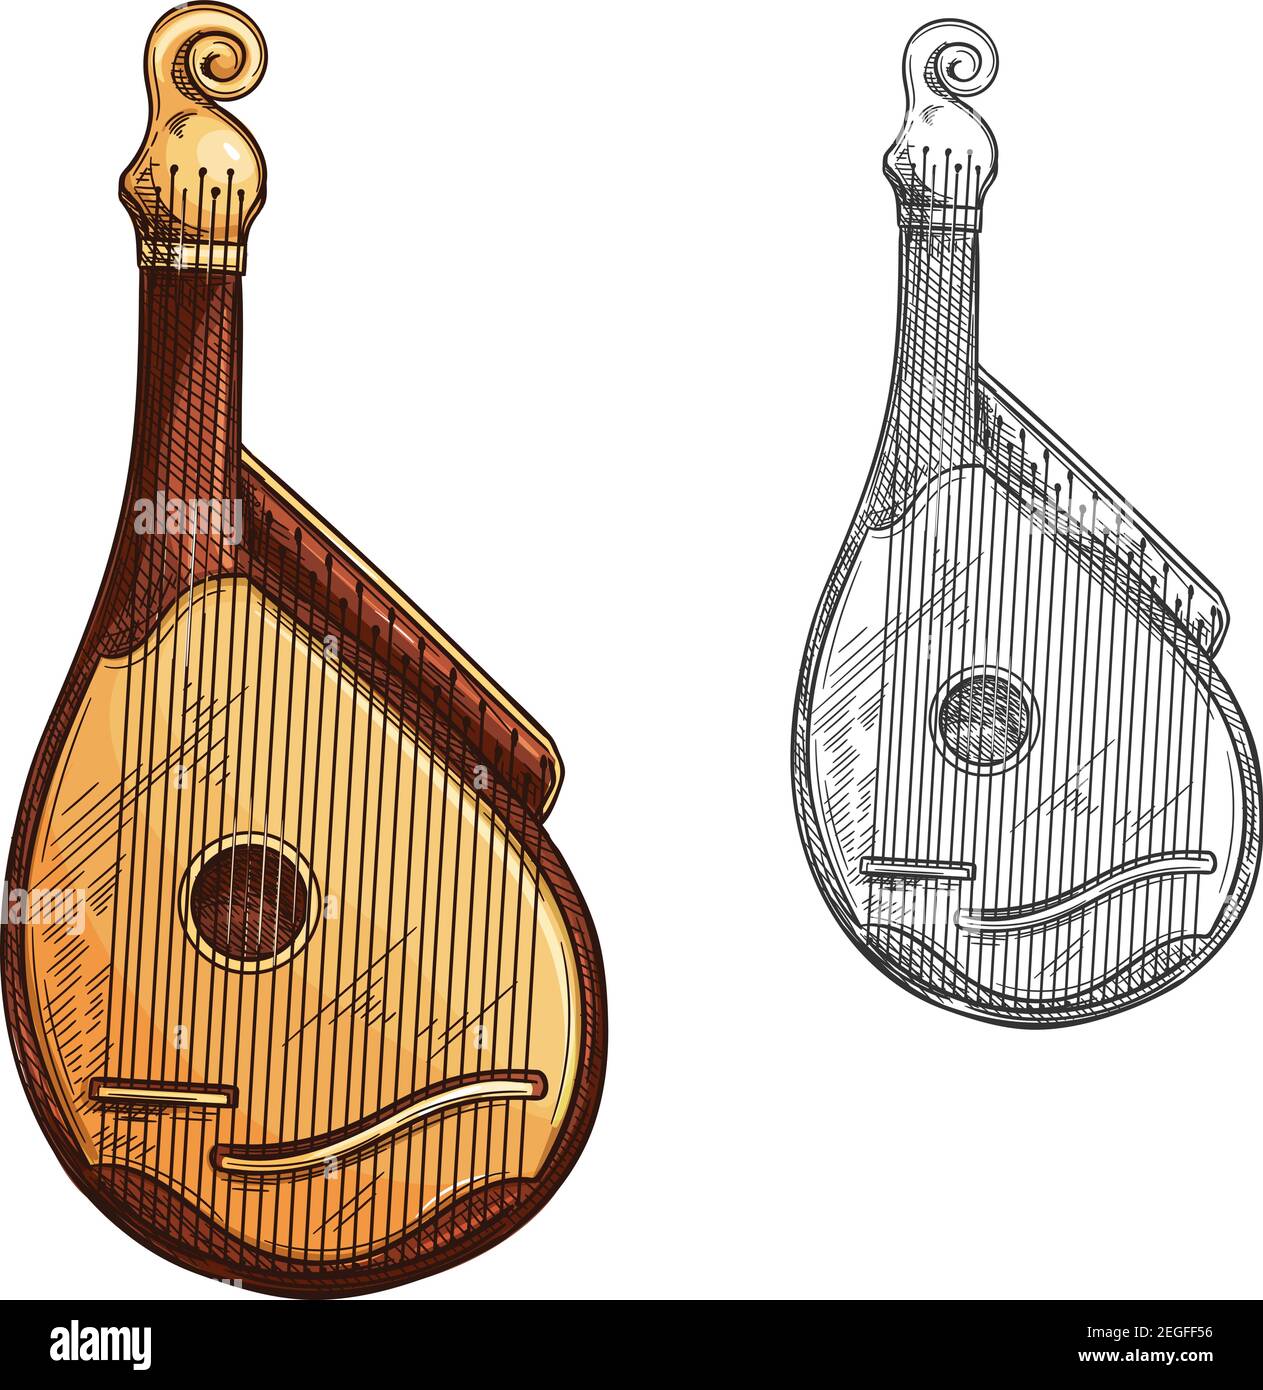 Bandura ukrainisches Musikinstrument isolierte Skizze. Bandura oder Kobza Zupfinstrument der Ukraine mit Holzkörper und Saiten für ethn Stock Vektor